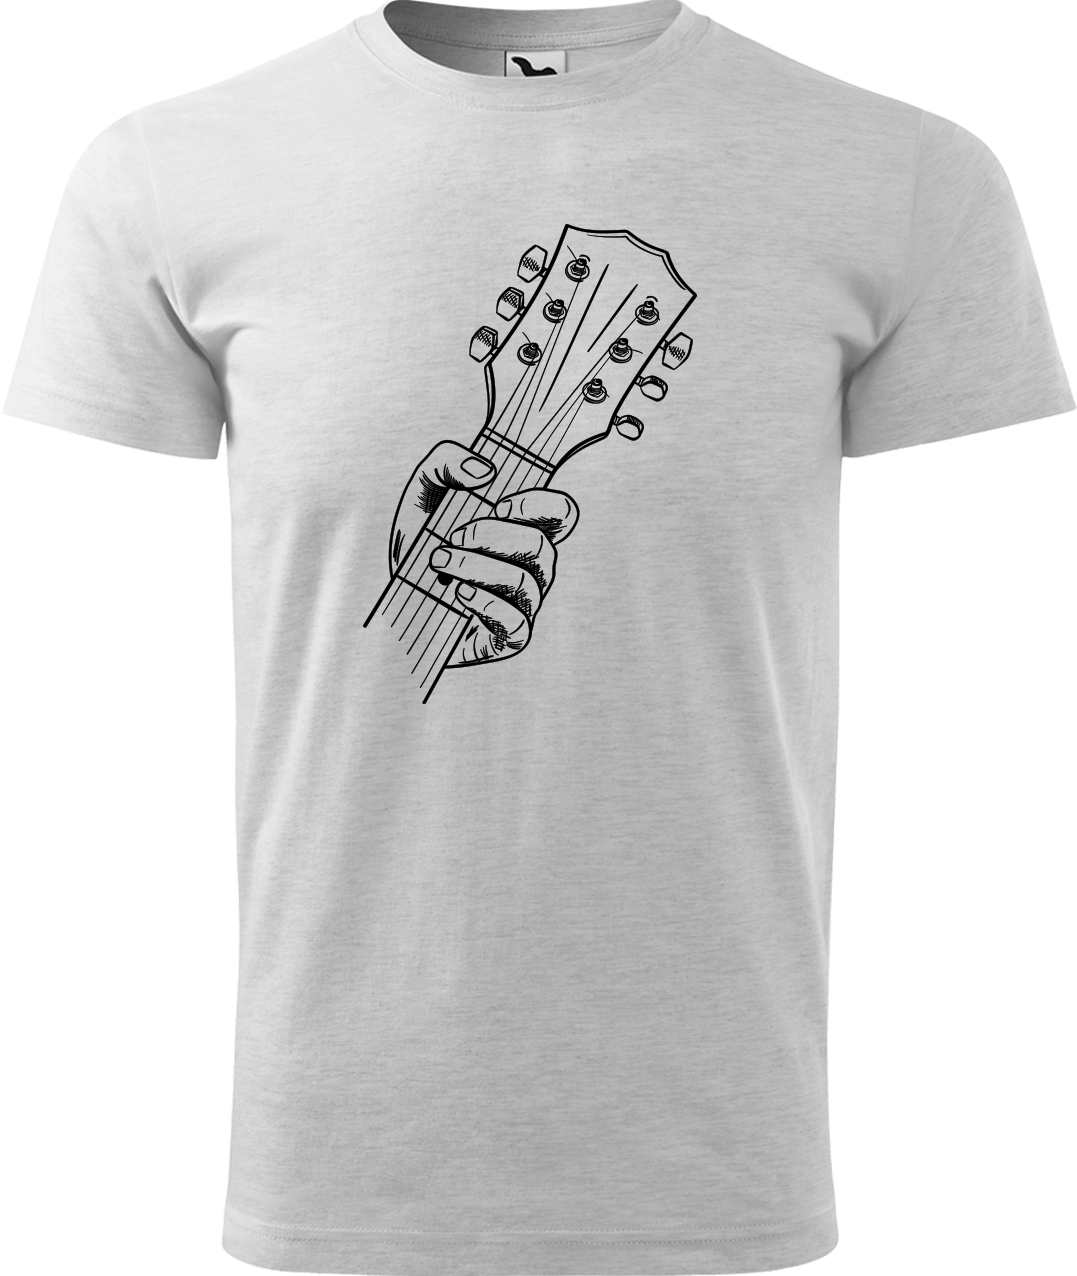 Pánské tričko s kytarou - Hlava kytary Velikost: 3XL, Barva: Světle šedý melír (03)